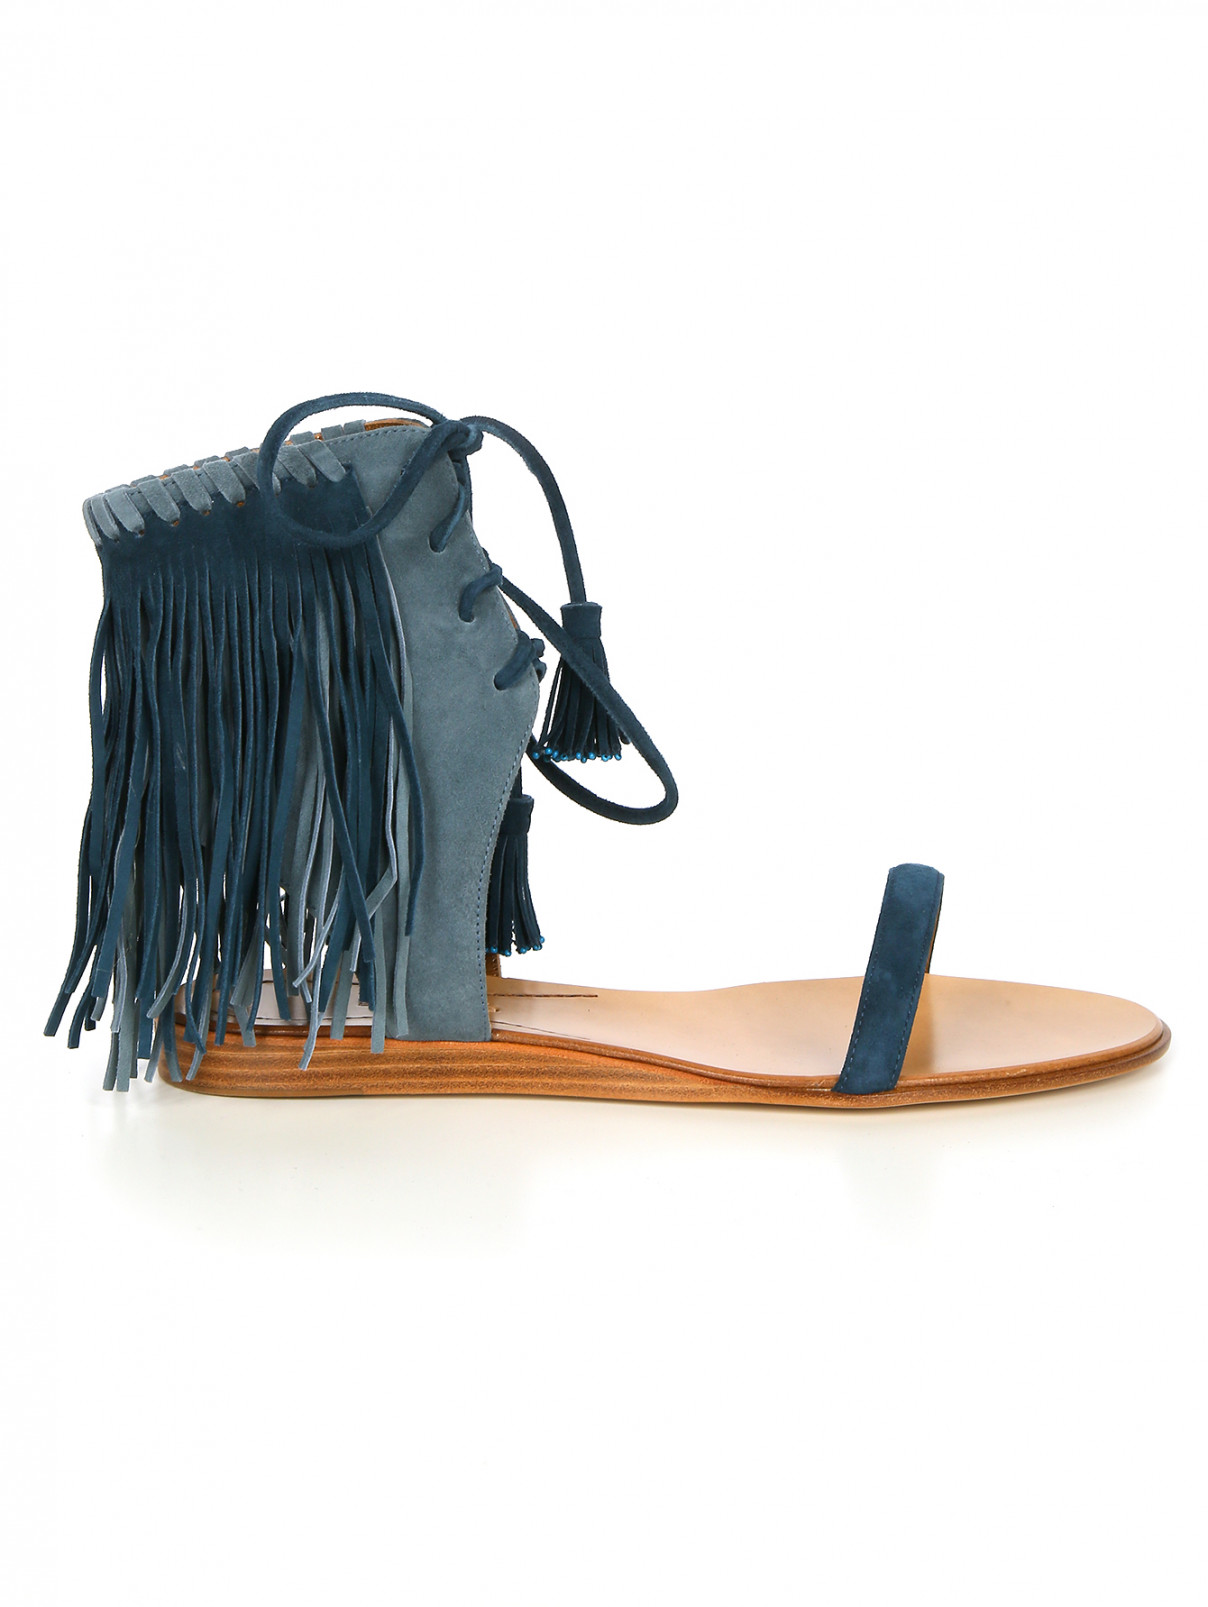 Босоножки с бахромой на шнуровке Etro  –  Модель Общий вид  – Цвет:  Синий